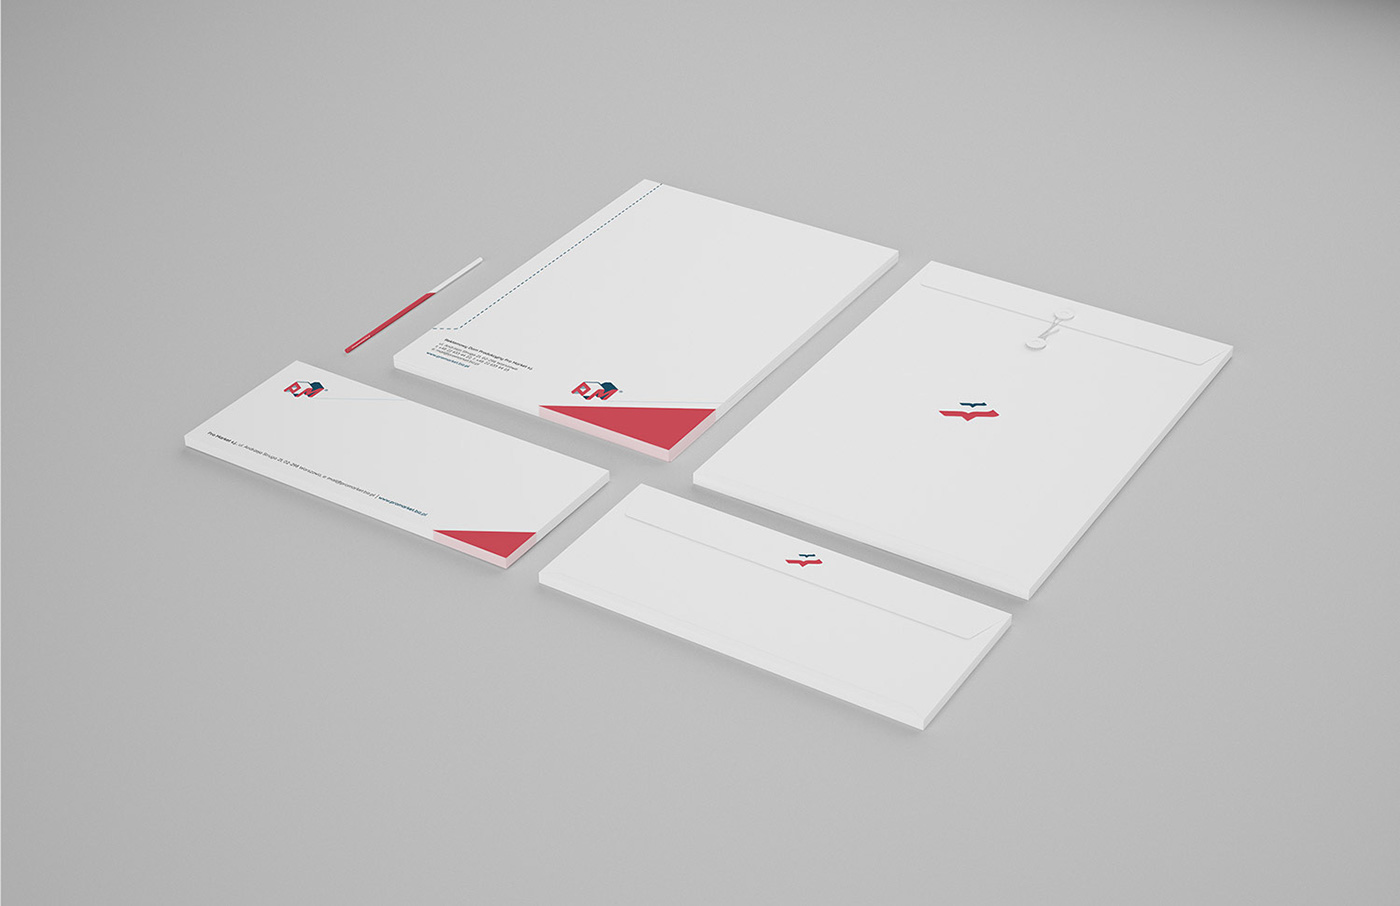 promarket kaboomdesign leaflet folder cards paper logo Website brochure